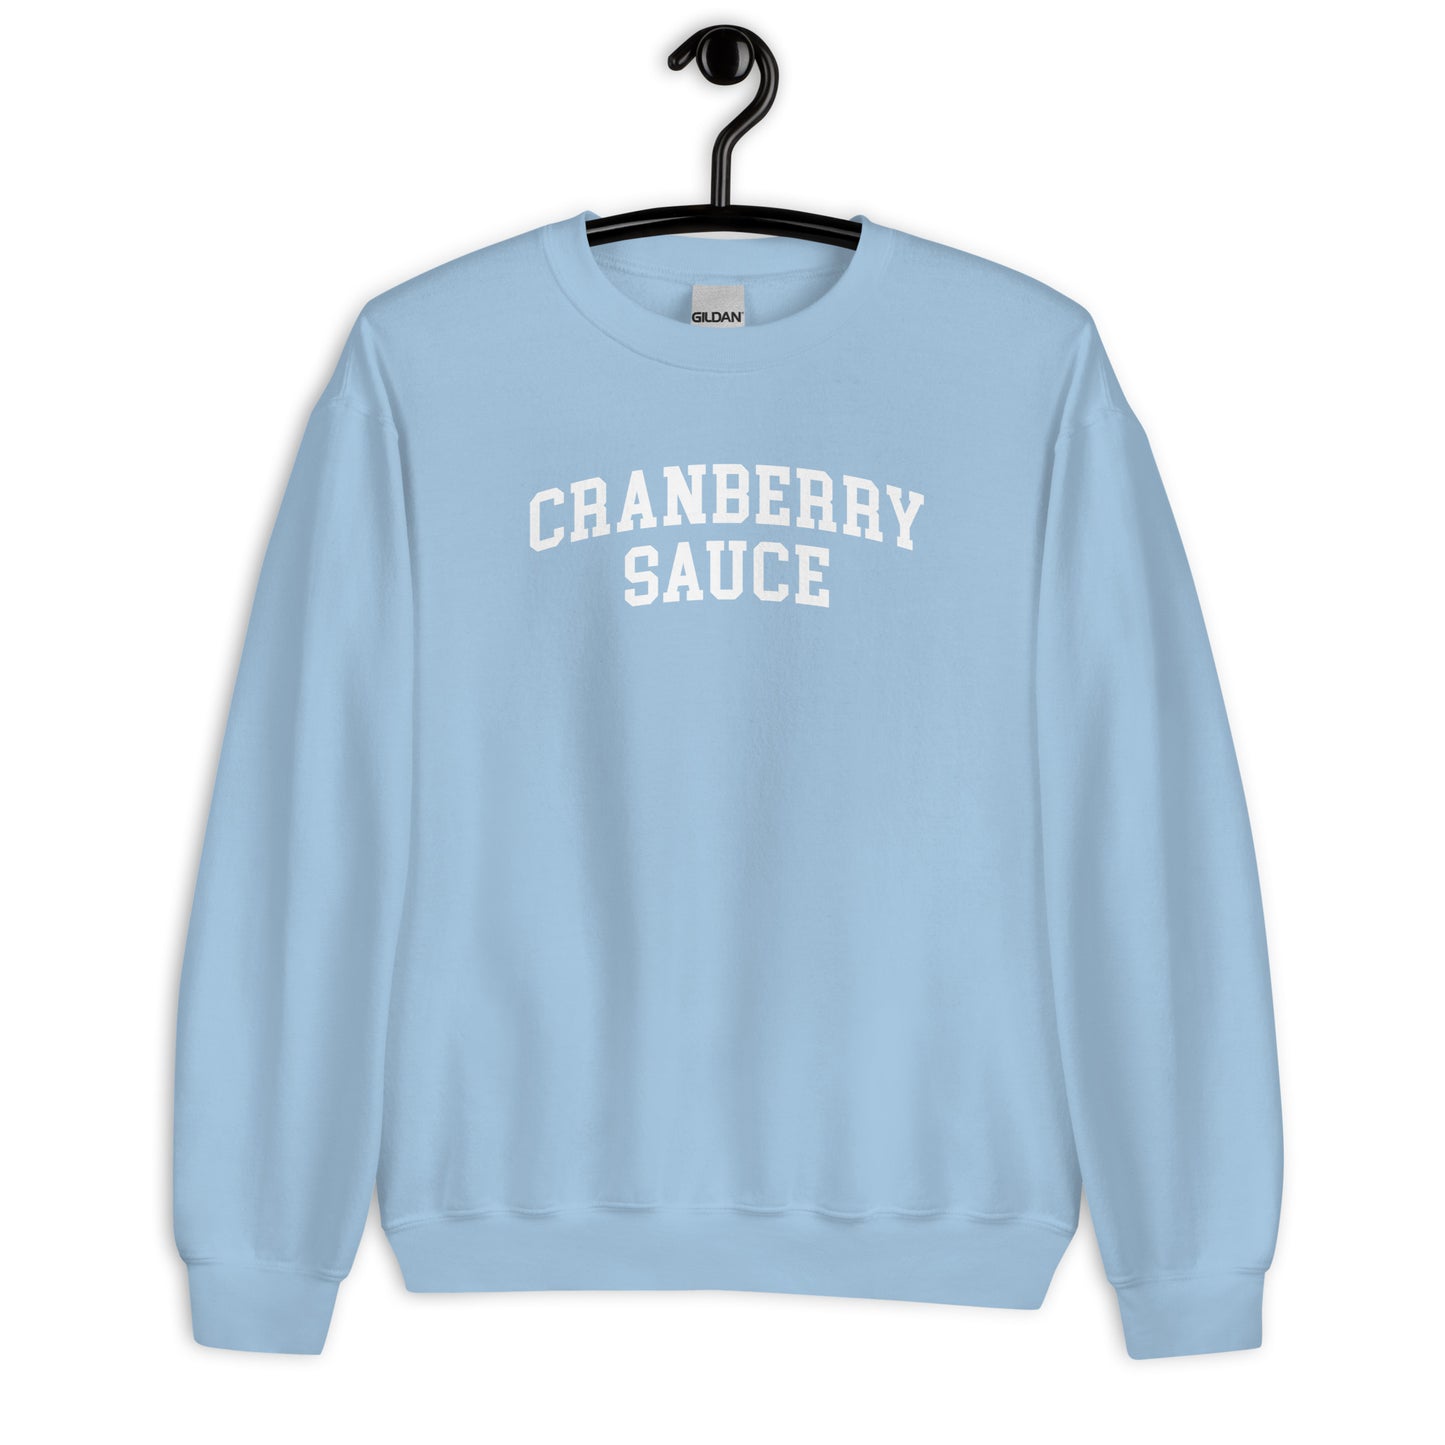 Cranberry Sauce Sweatshirt - Arched Font